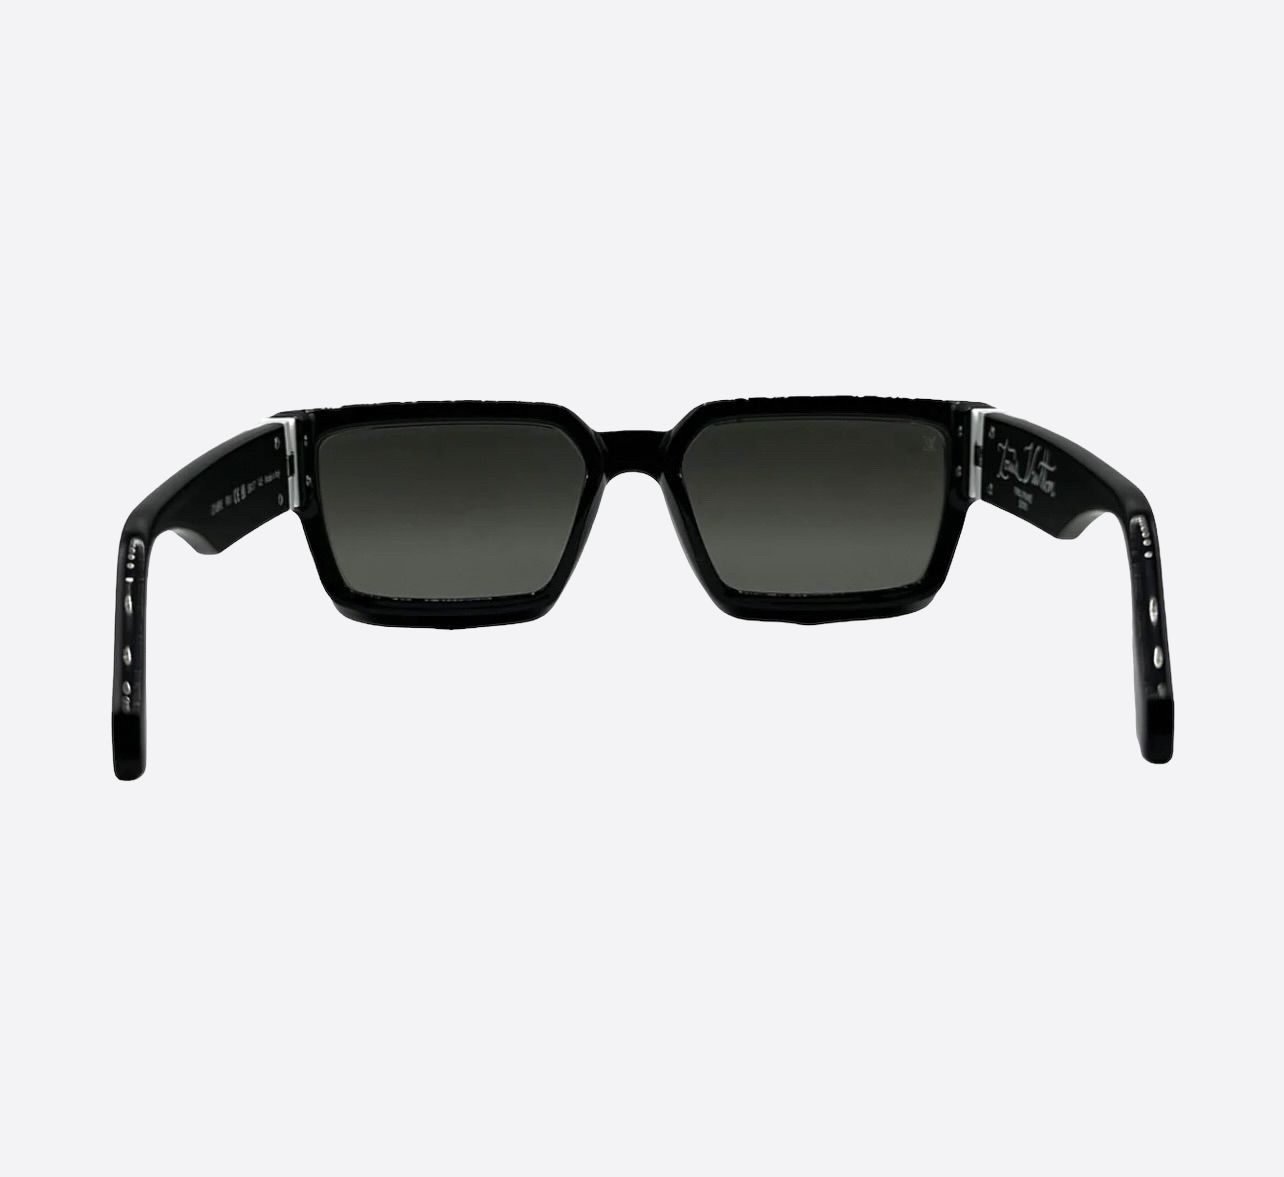 Louis Vuitton Black & White 1.1 Millionaire Sunglasses